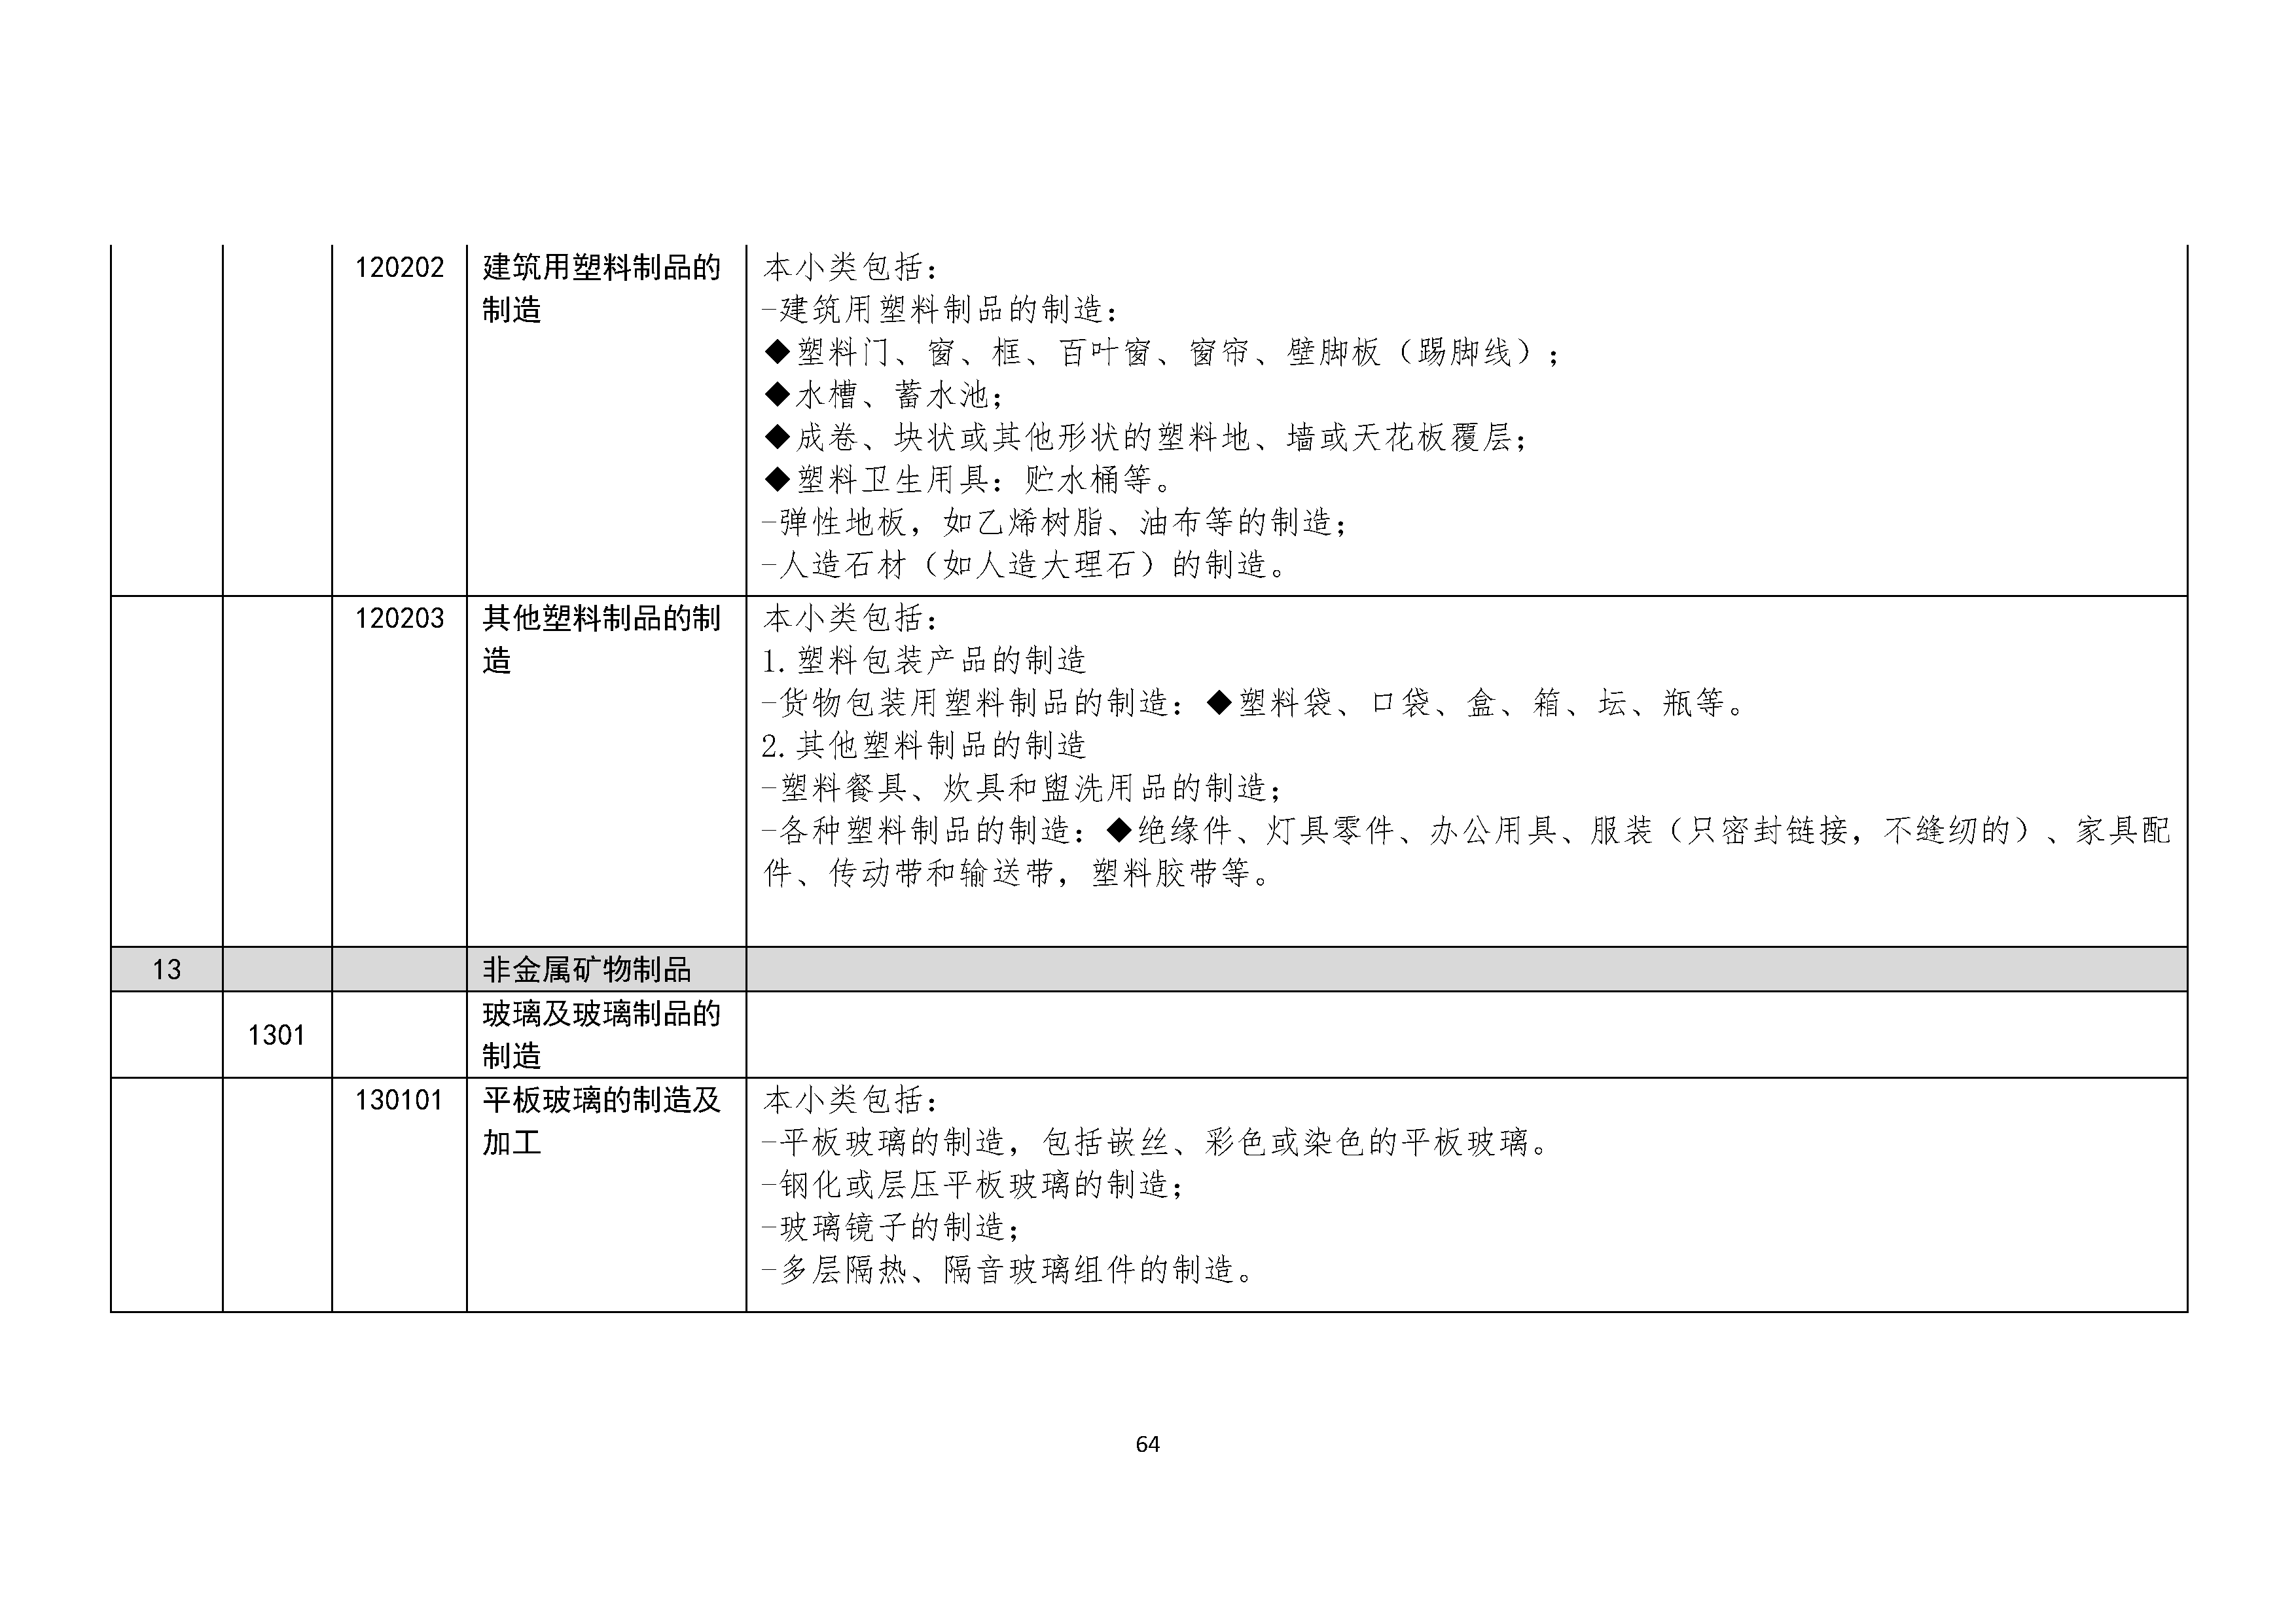 B.6《中国核能行业协会供应商评价供应商分类及产品专业范围划分规定》_页面_065.png